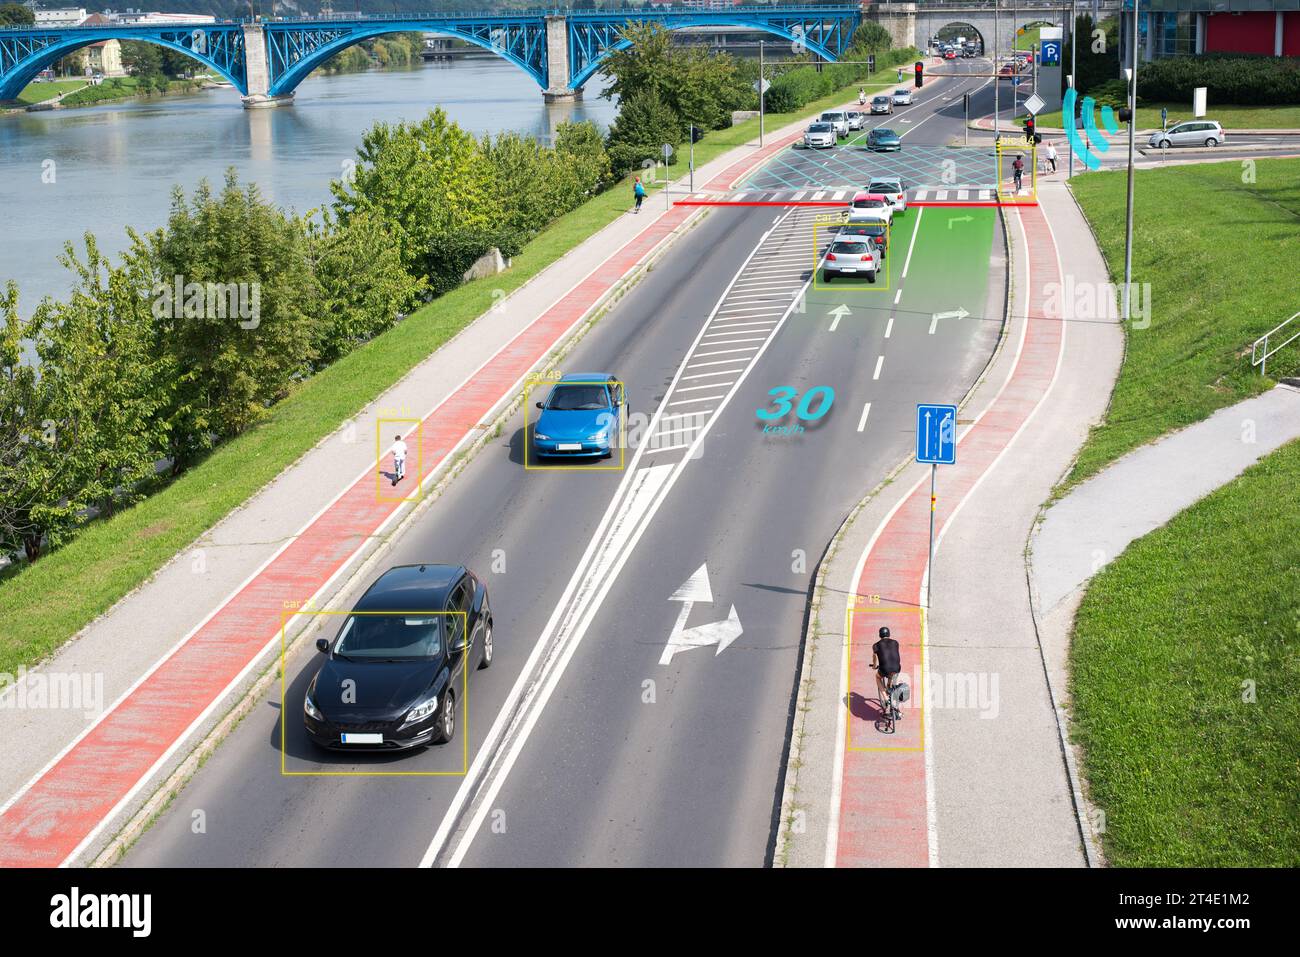 Intelligentes Kreuzungskonzept in der Stadt, überwacht durch Kameras und Sensoren zur Steuerung von Fahrzeugen, Radfahrern und Fußgängern. Stockfoto